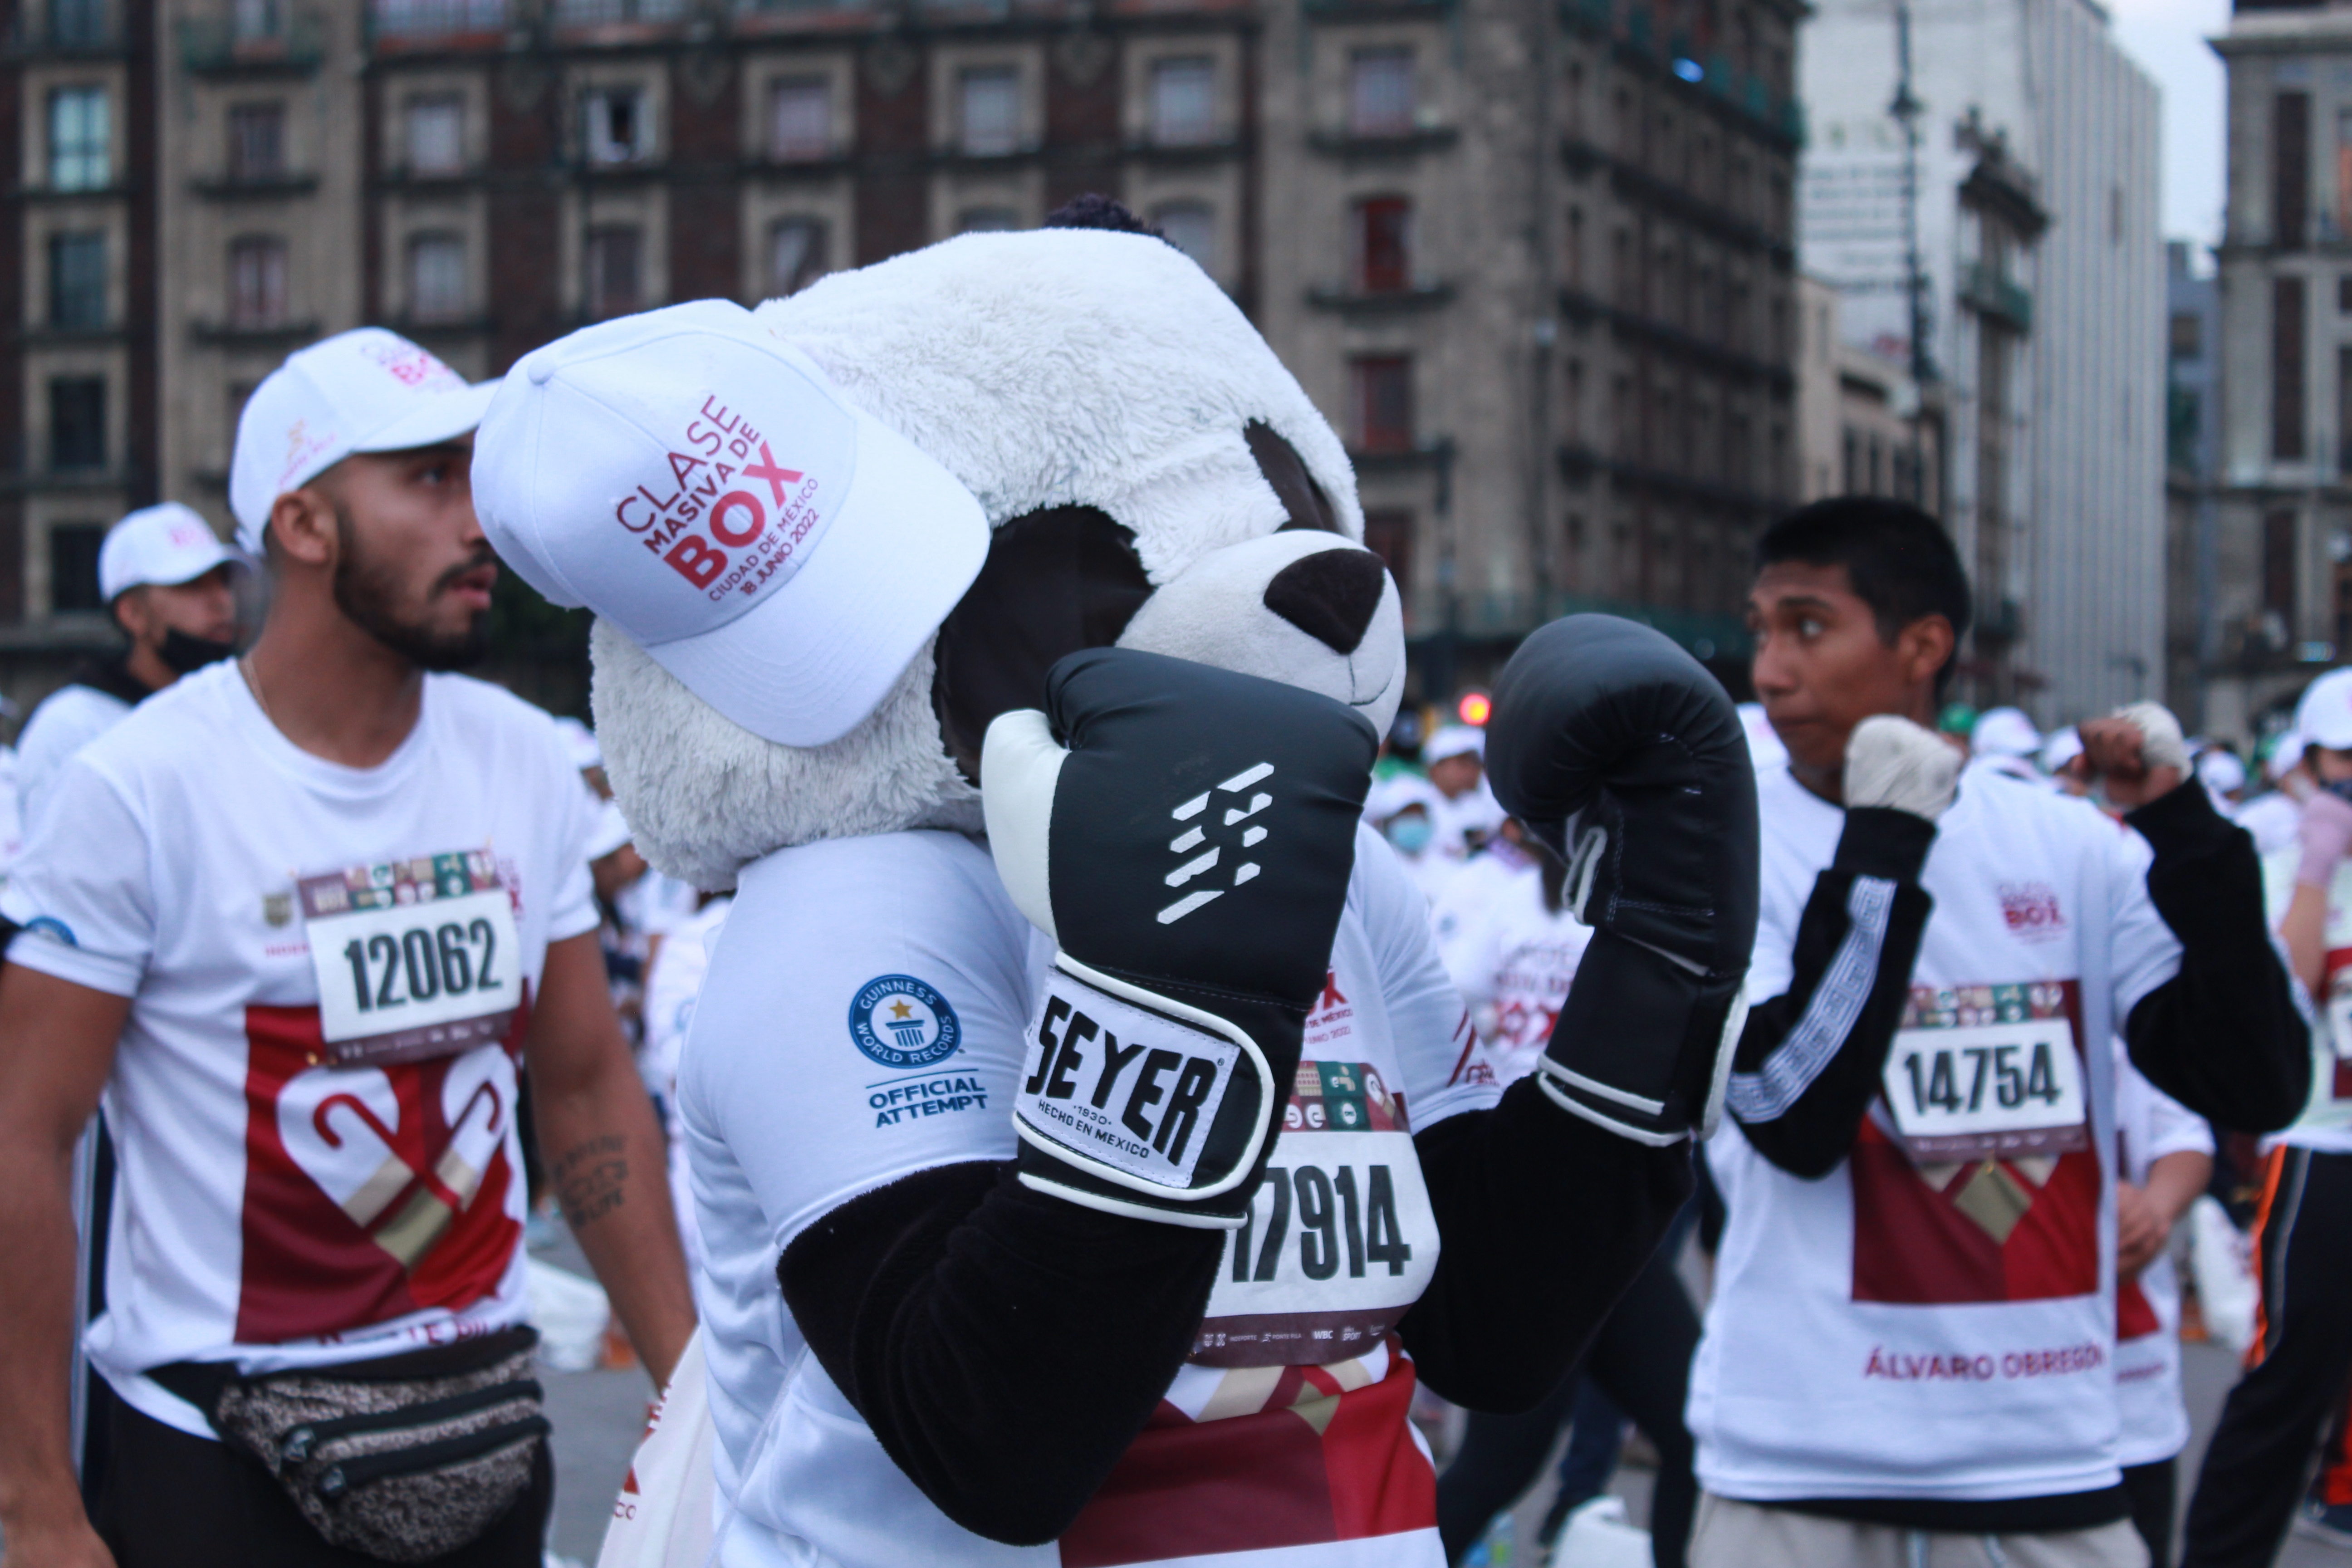 La Ciudad de México llevó a cabo la clase masiva de boxeo en el Zócalo de la capital la mañana del sábado 18 de junio (Foto: Luz Anahí Coello González/Infobae México)